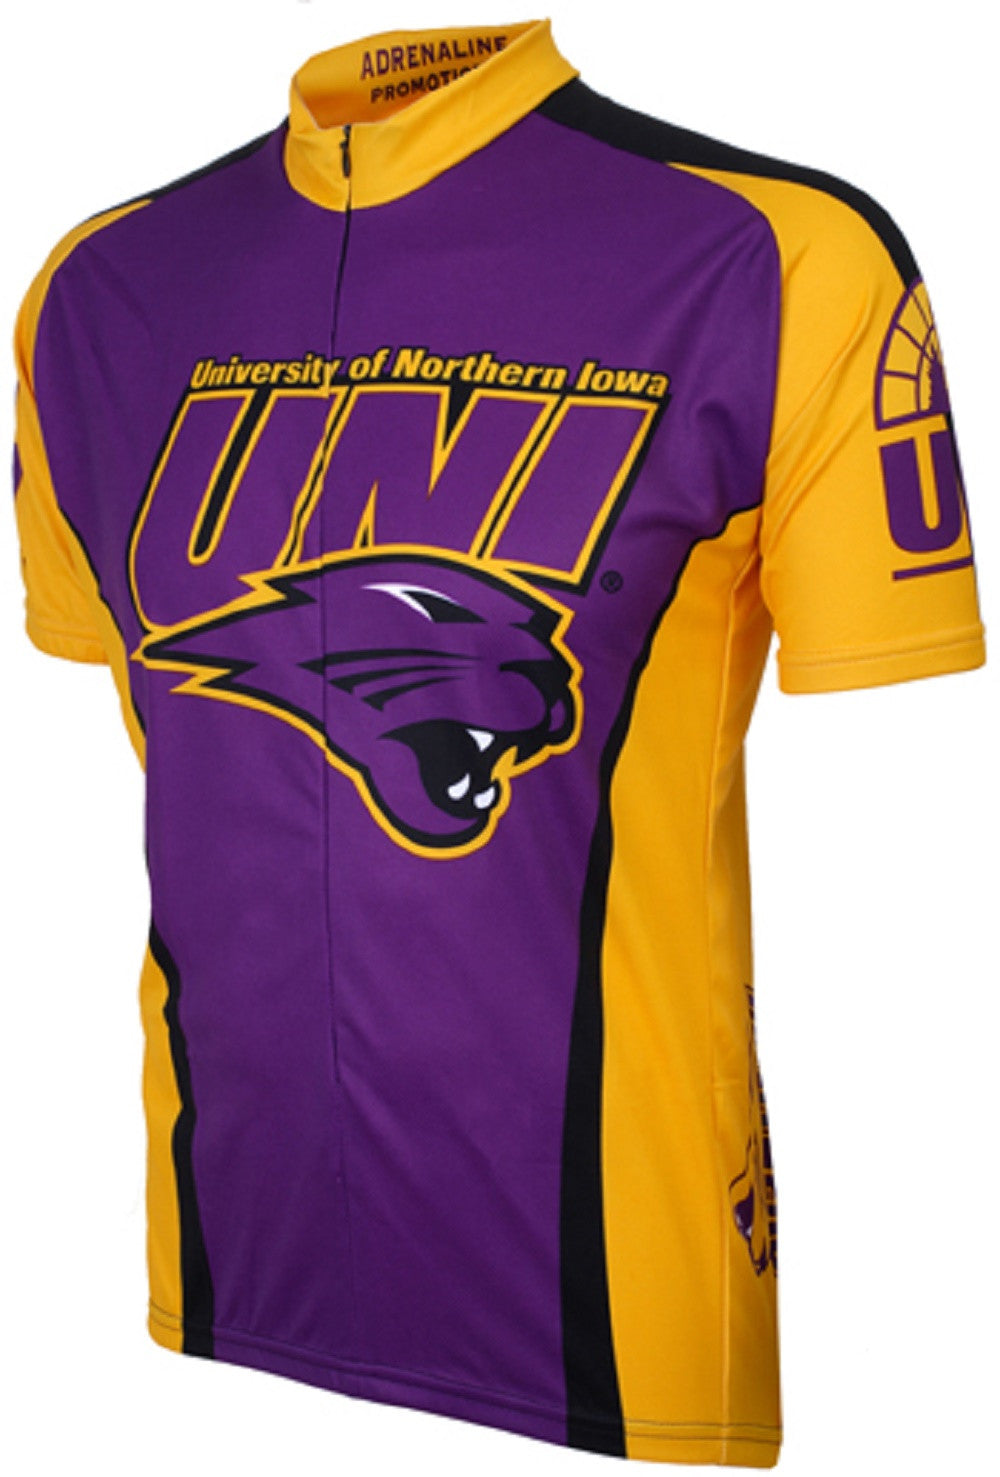 Northern Iowa UNI Panthers Cycling Jersey (S, L, XL, 2XL)